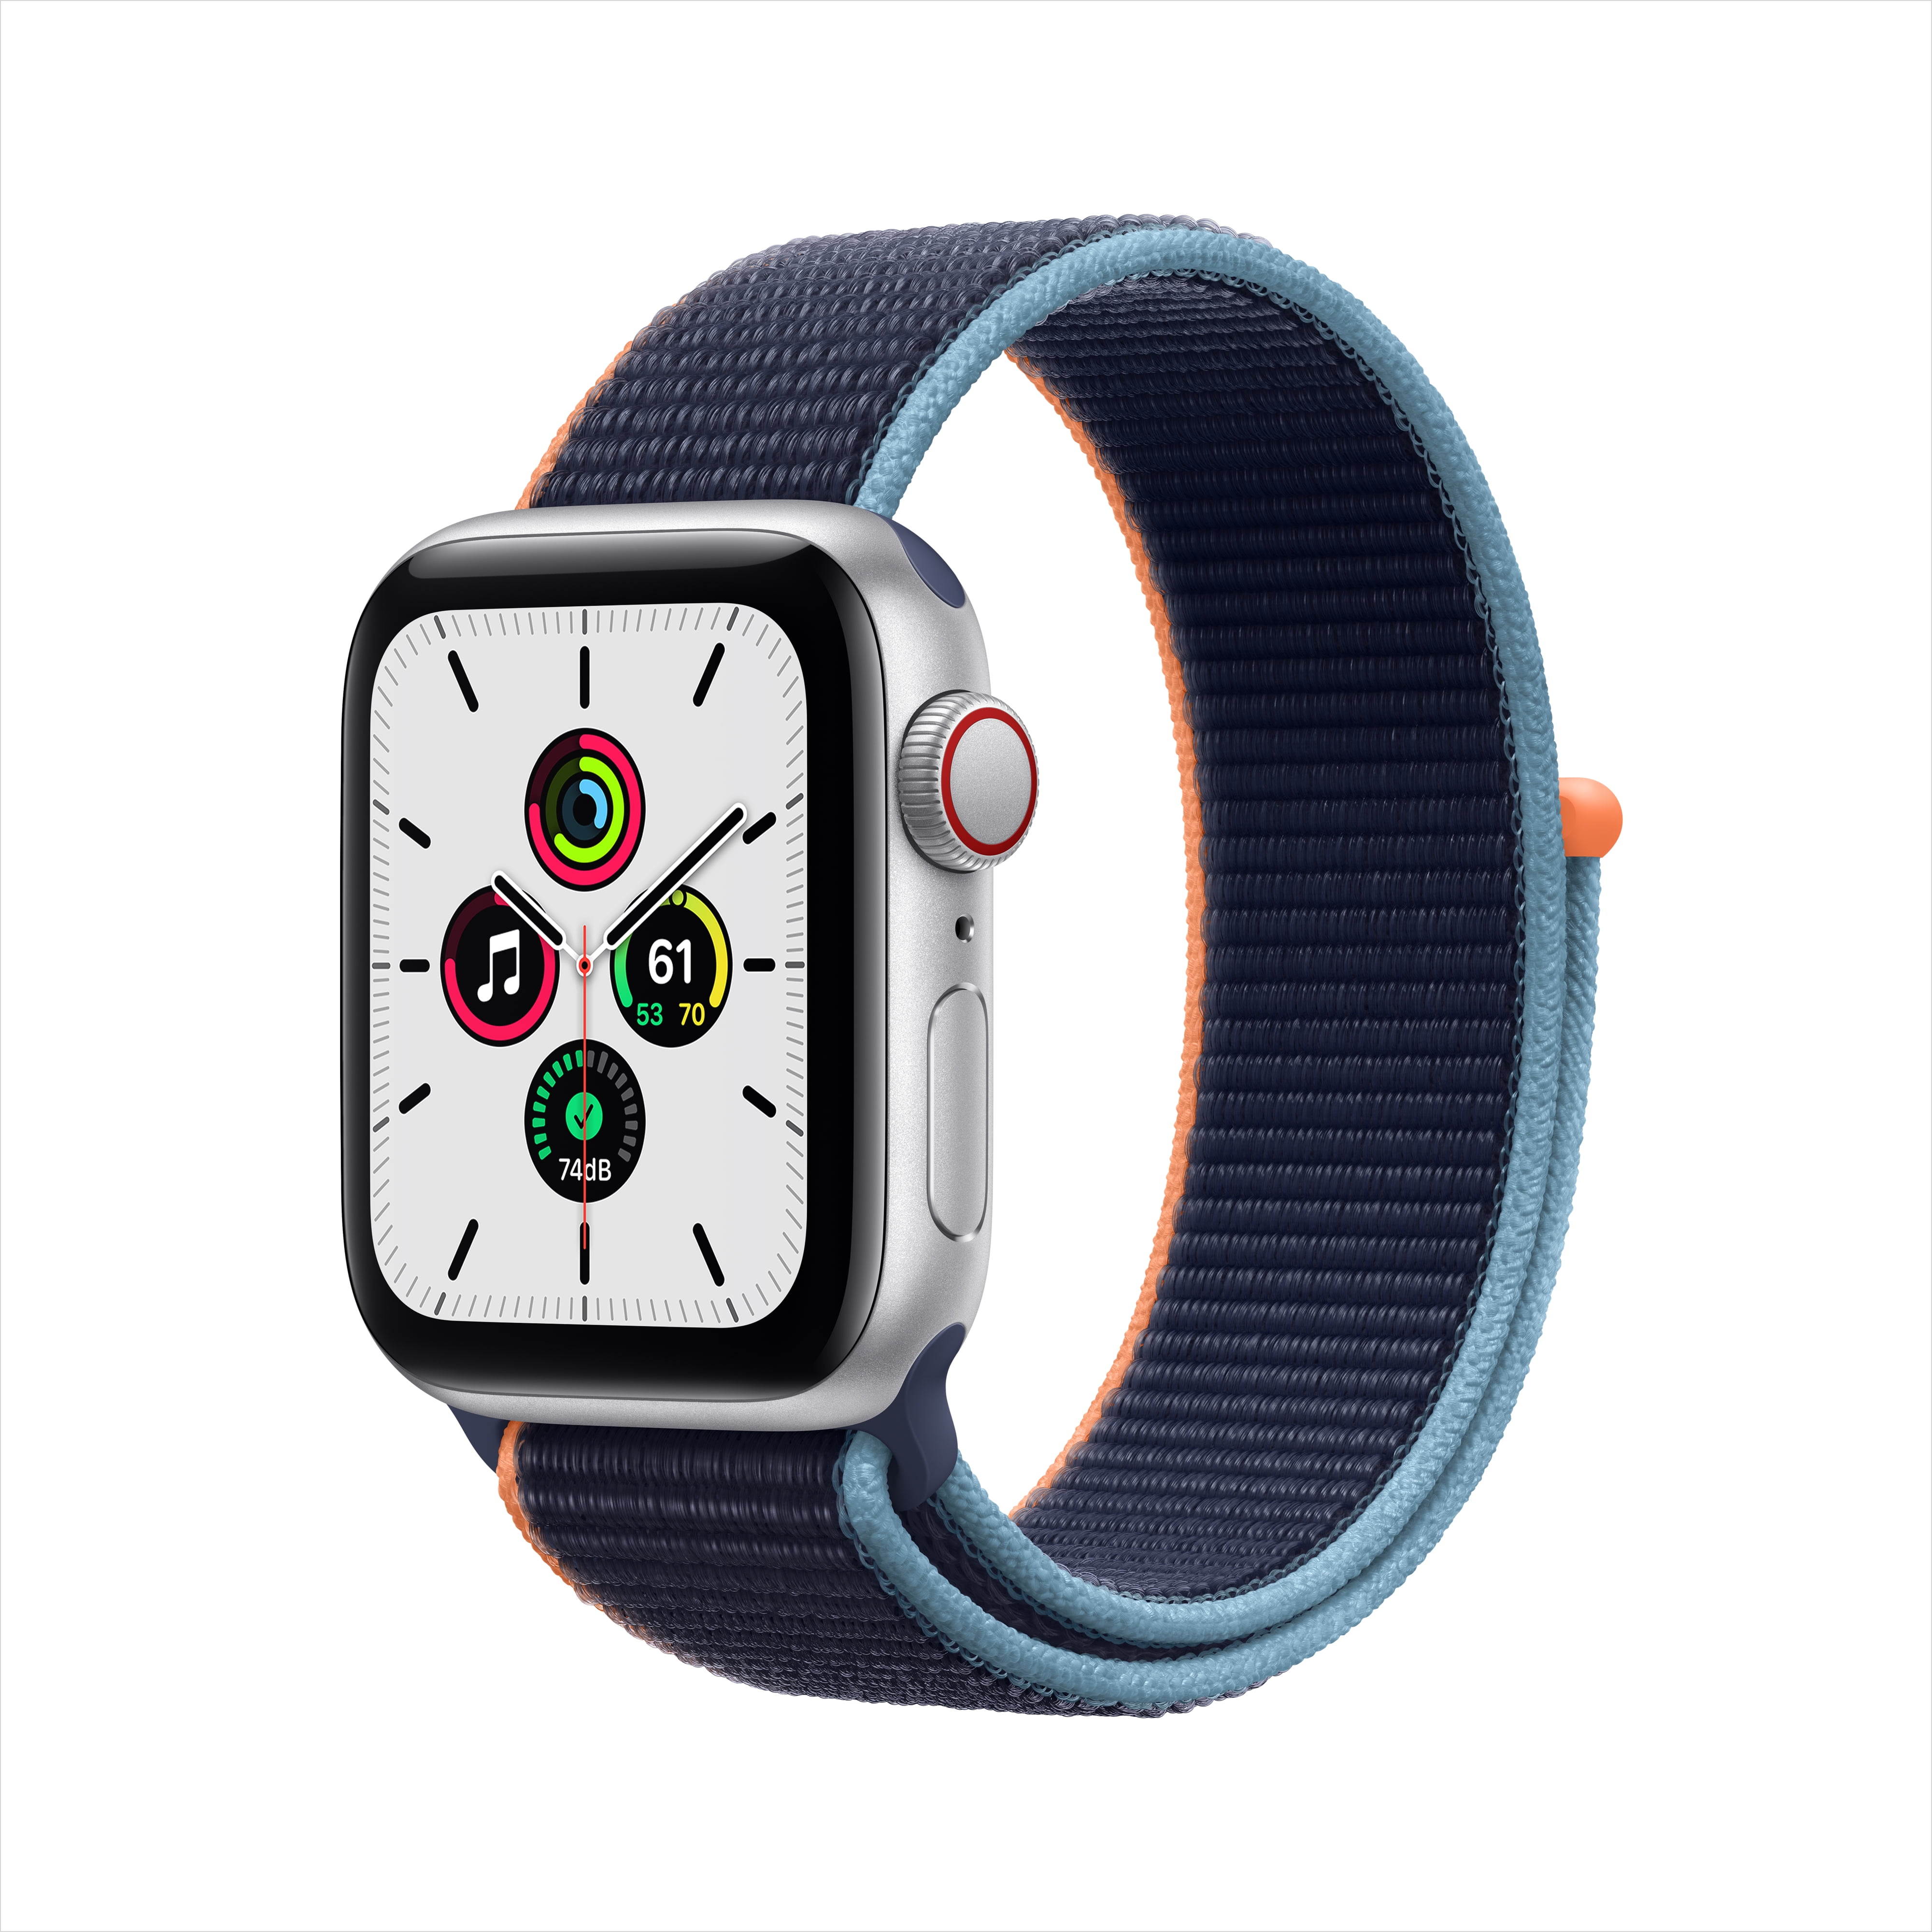 【新品未開封品】Apple Watch SE(GPS) 40mm ゴールド